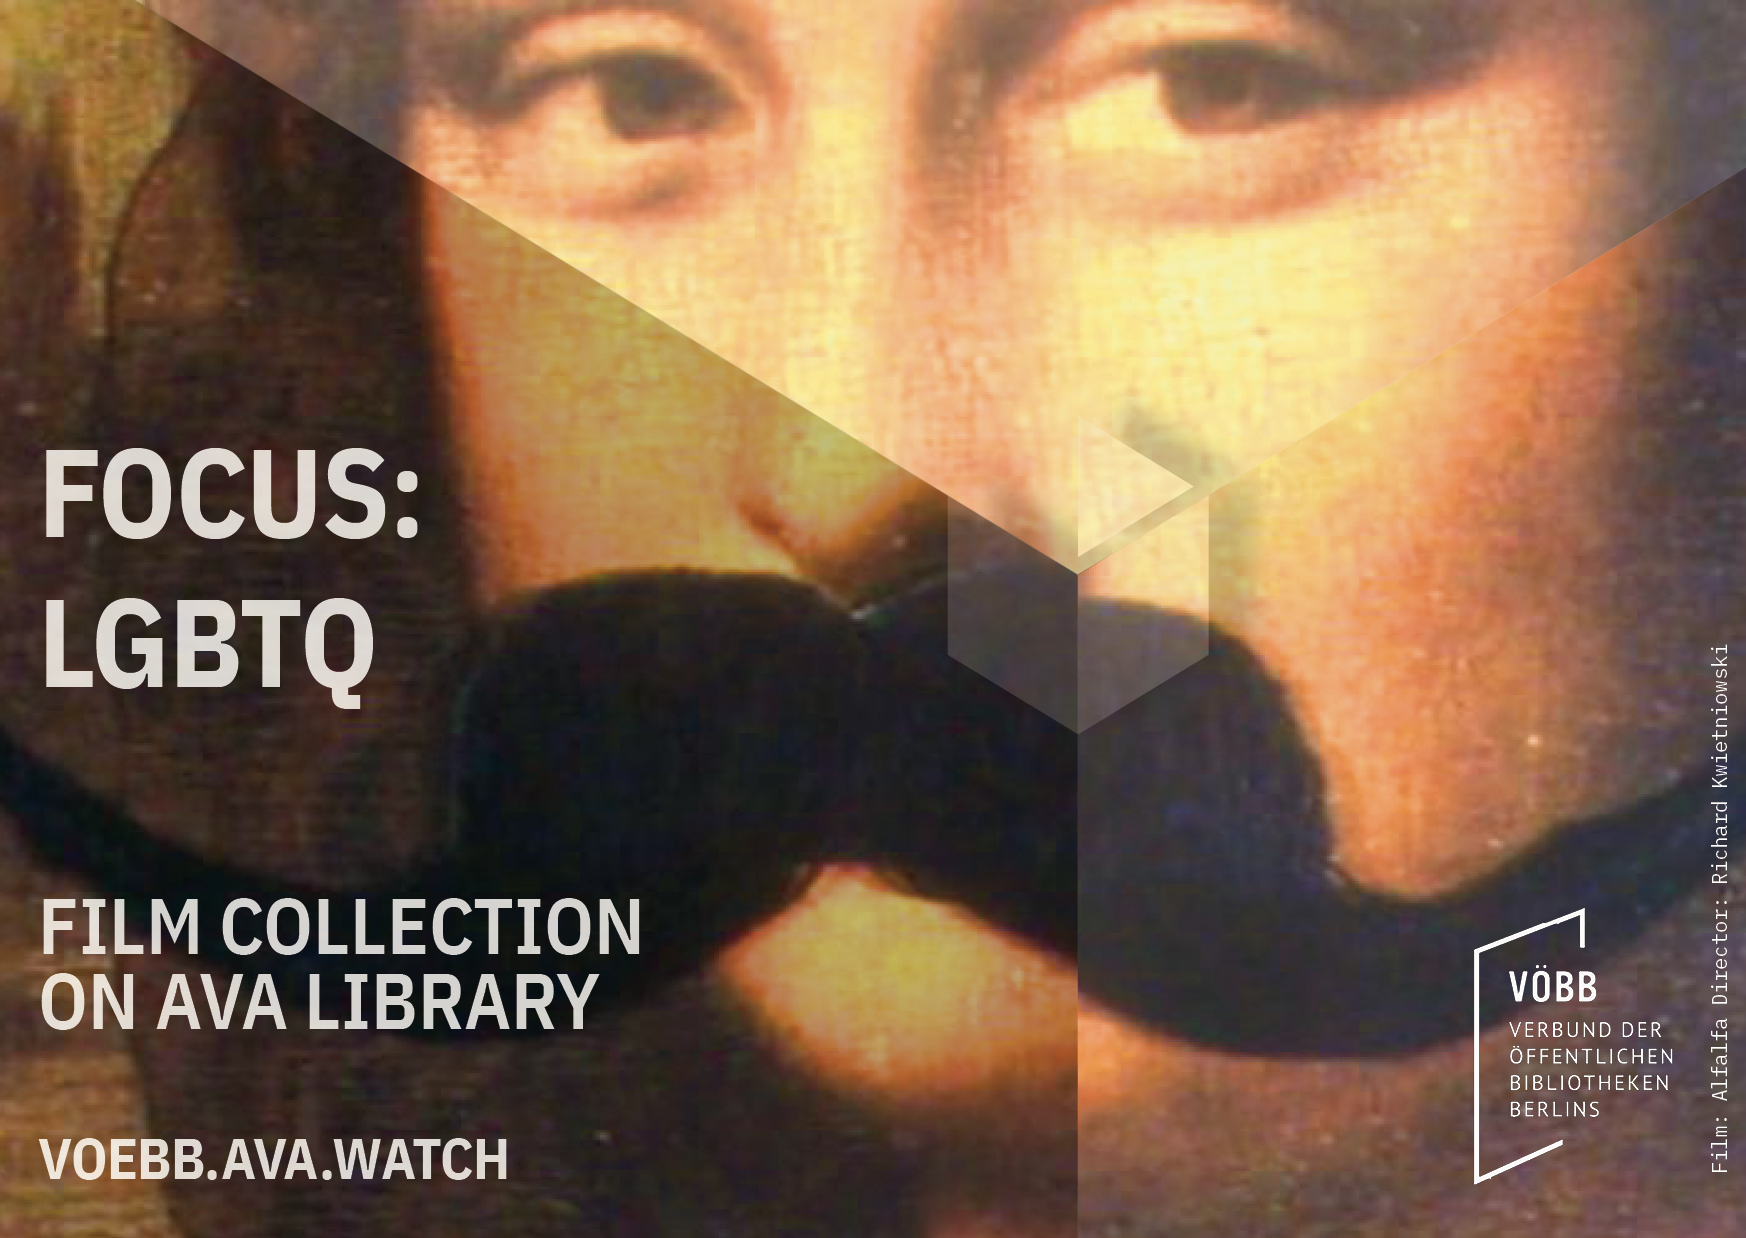 Mona Lisa samt Schnurrbart mit Buchstaben darauf: Focus LGBTQ Film Collection on AVA Library